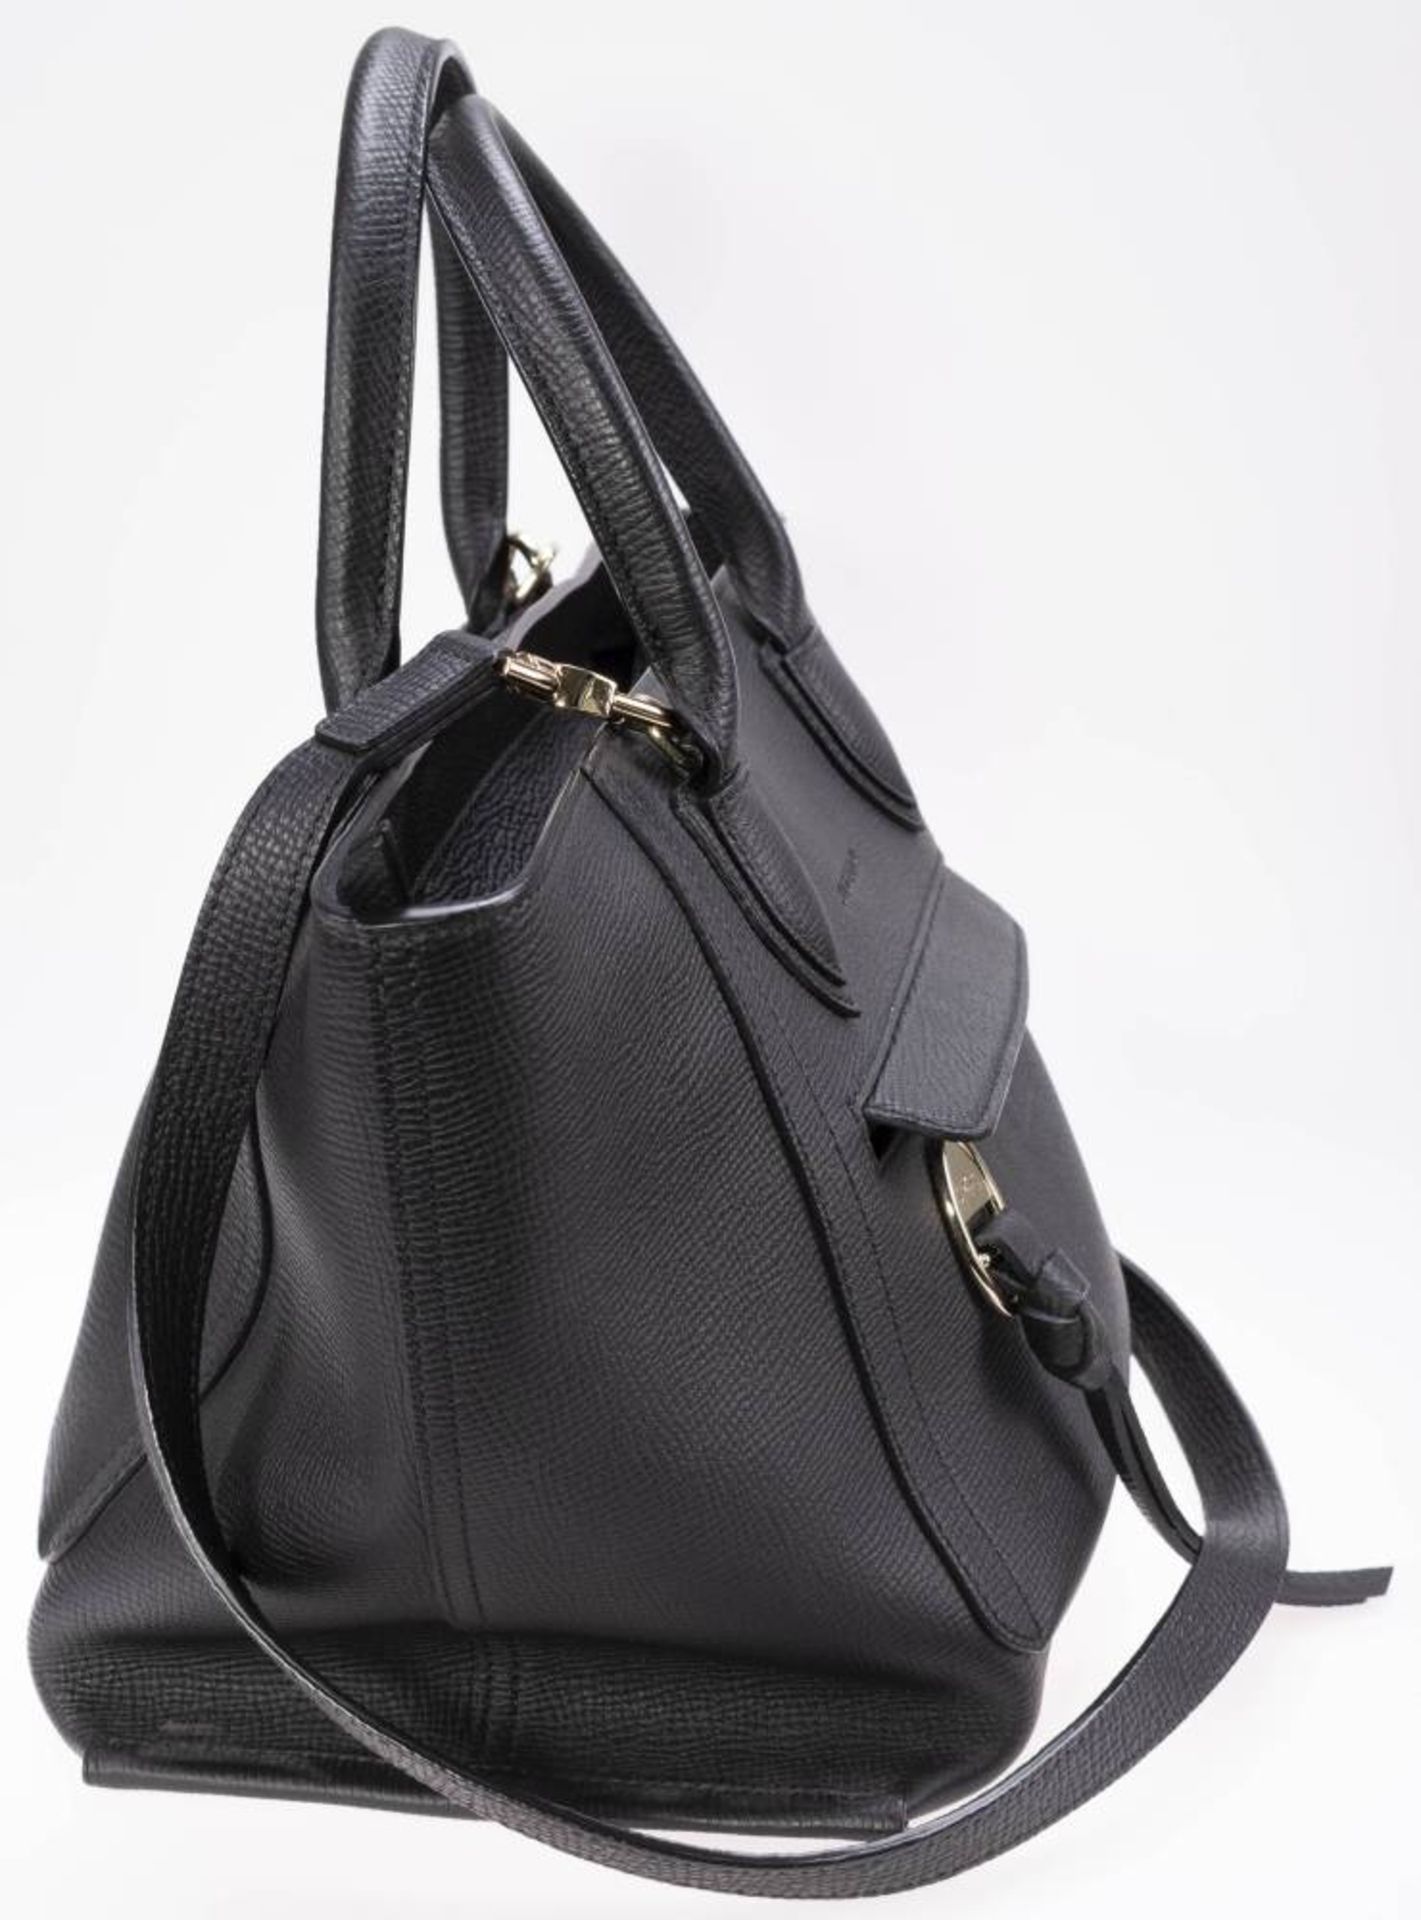 Longchamp Shopper, schwarzes Leder, goldfarbenes Metall, Außentasche mit Reißverschluss, innen - Image 4 of 6